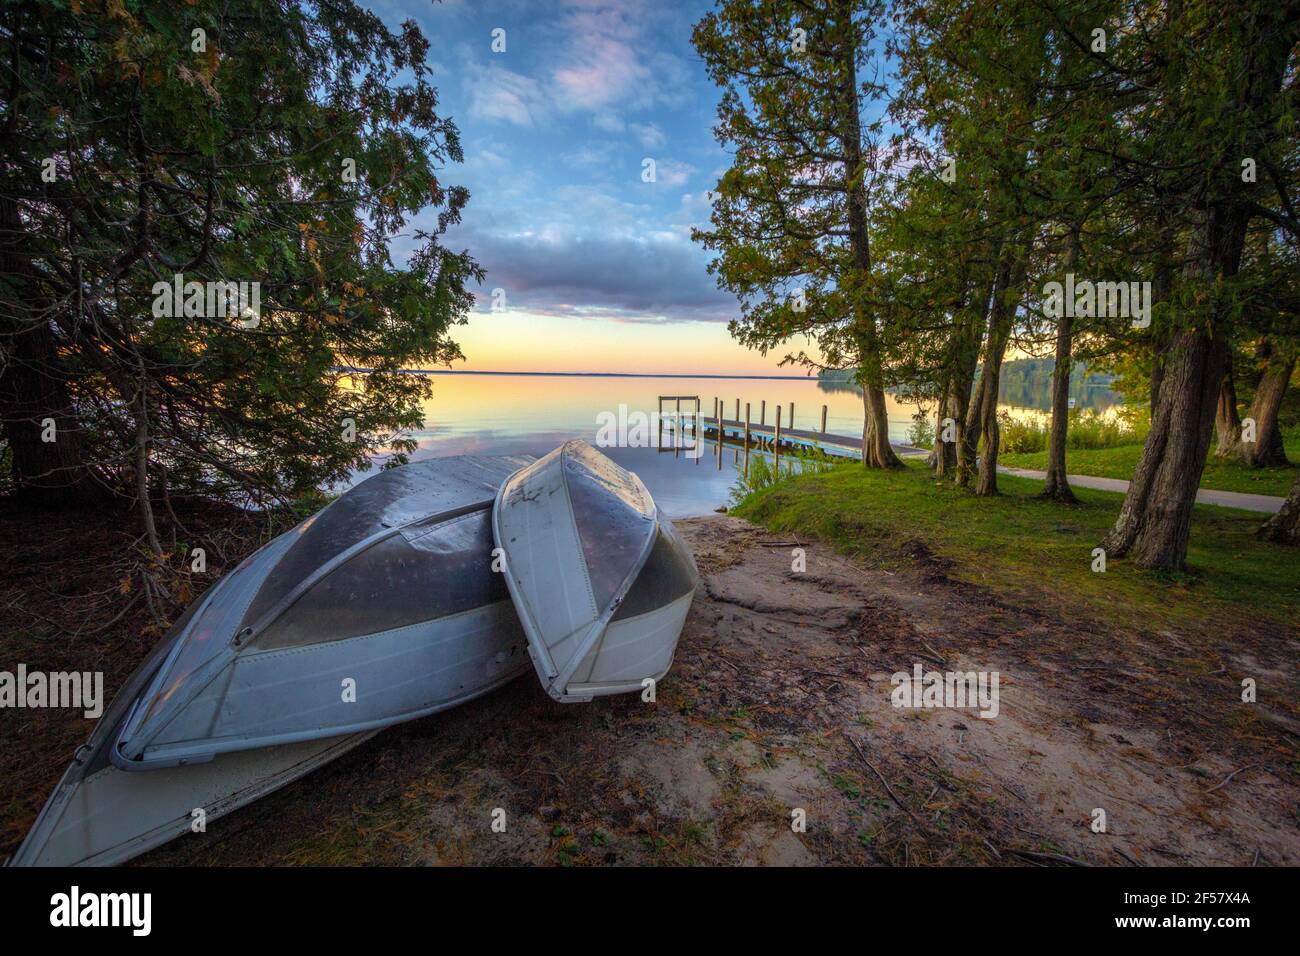 Barche a remi sul lago Sunset. Gruppo di barche a remi in alluminio sulla spiaggia di un lago all'alba con un molo in legno. Indian Lake state Park, Manistique, Michigan. Foto Stock